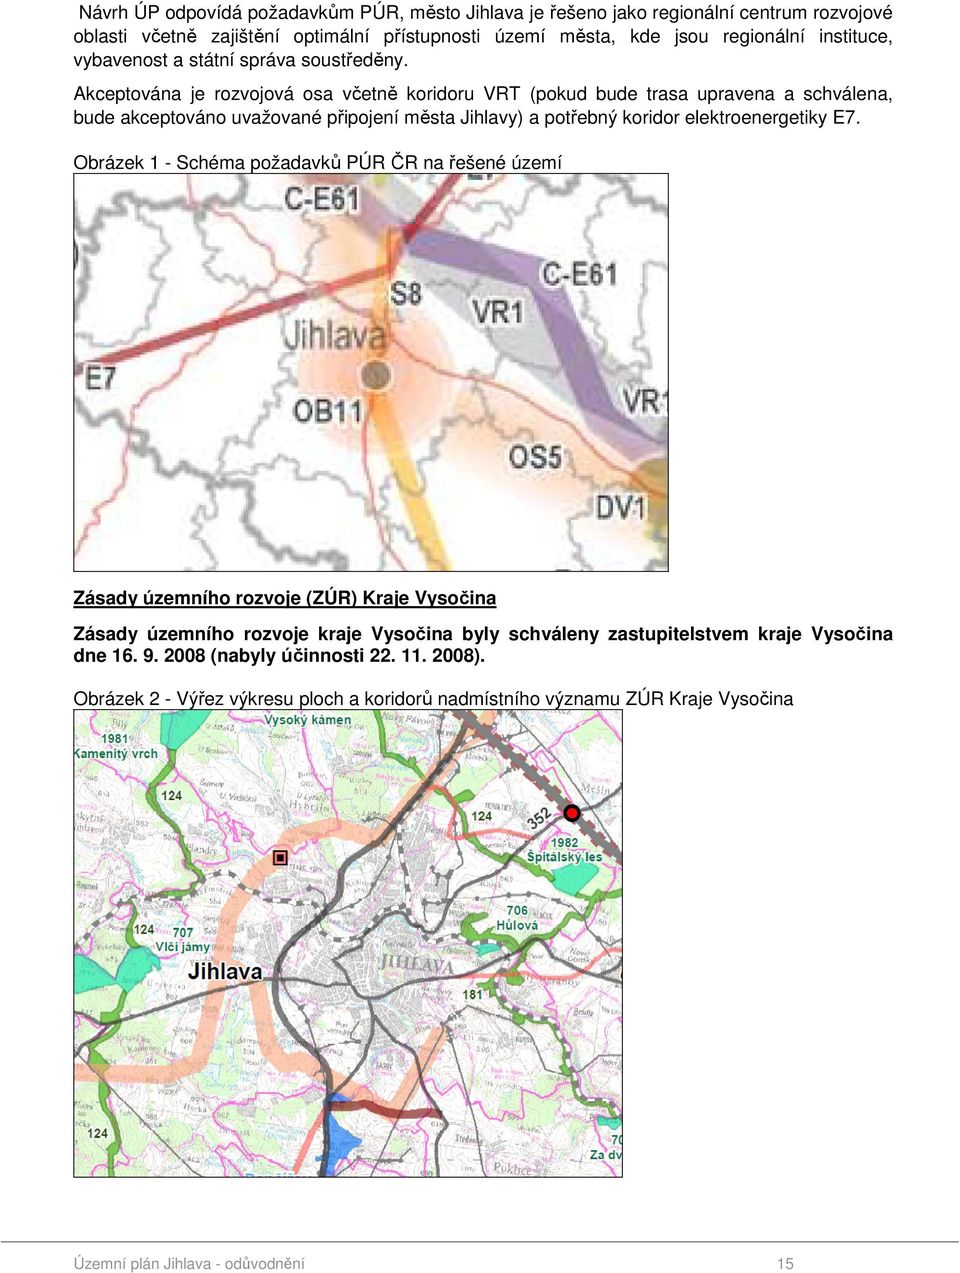 Akceptována je rozvojová osa včetně koridoru VRT (pokud bude trasa upravena a schválena, bude akceptováno uvažované připojení města Jihlavy) a potřebný koridor elektroenergetiky E7.